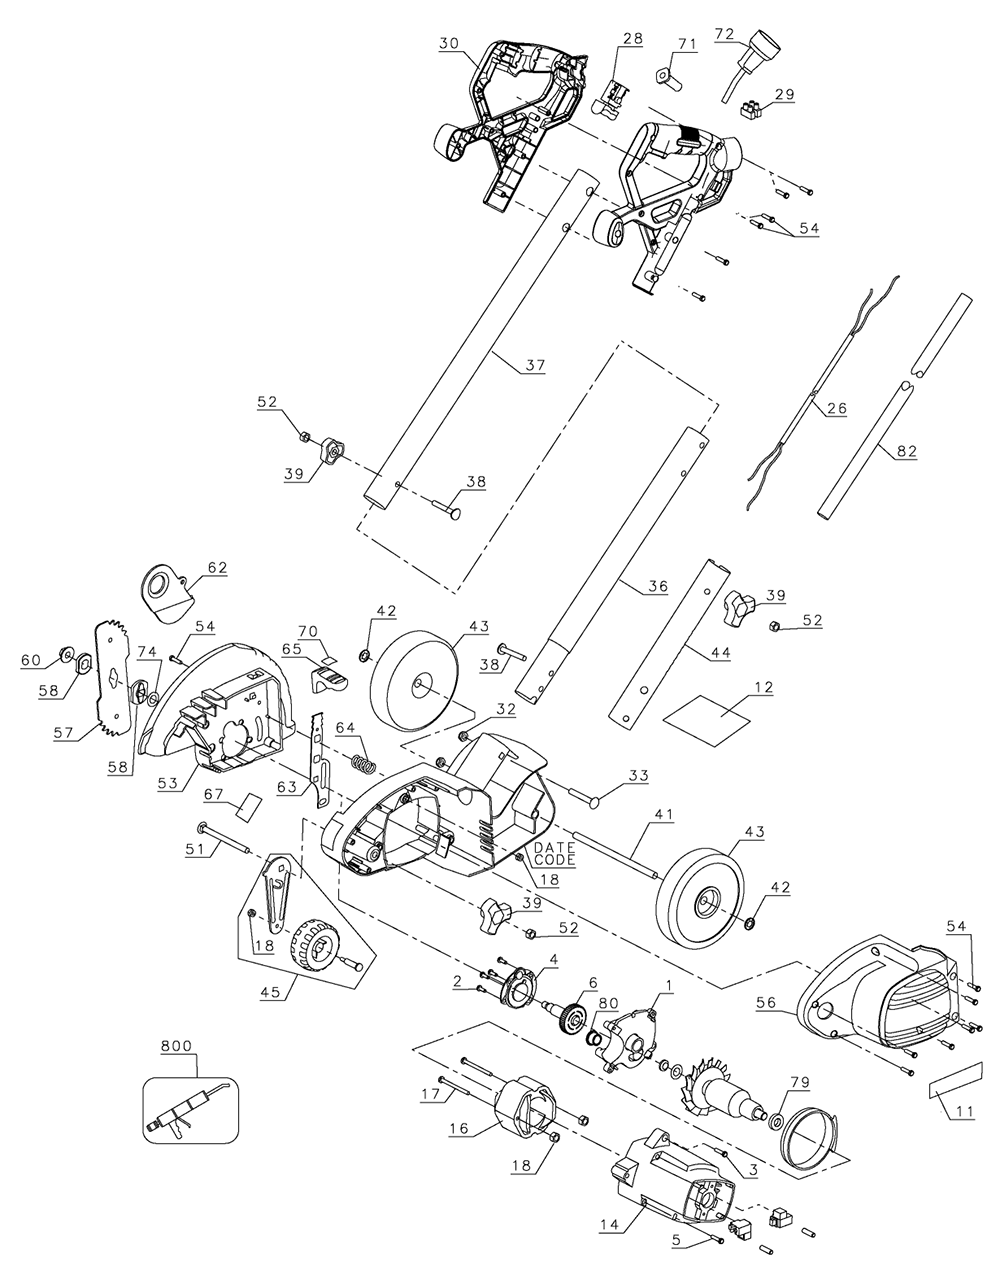 Black & Decker GE800 Type 1 Parts Diagrams